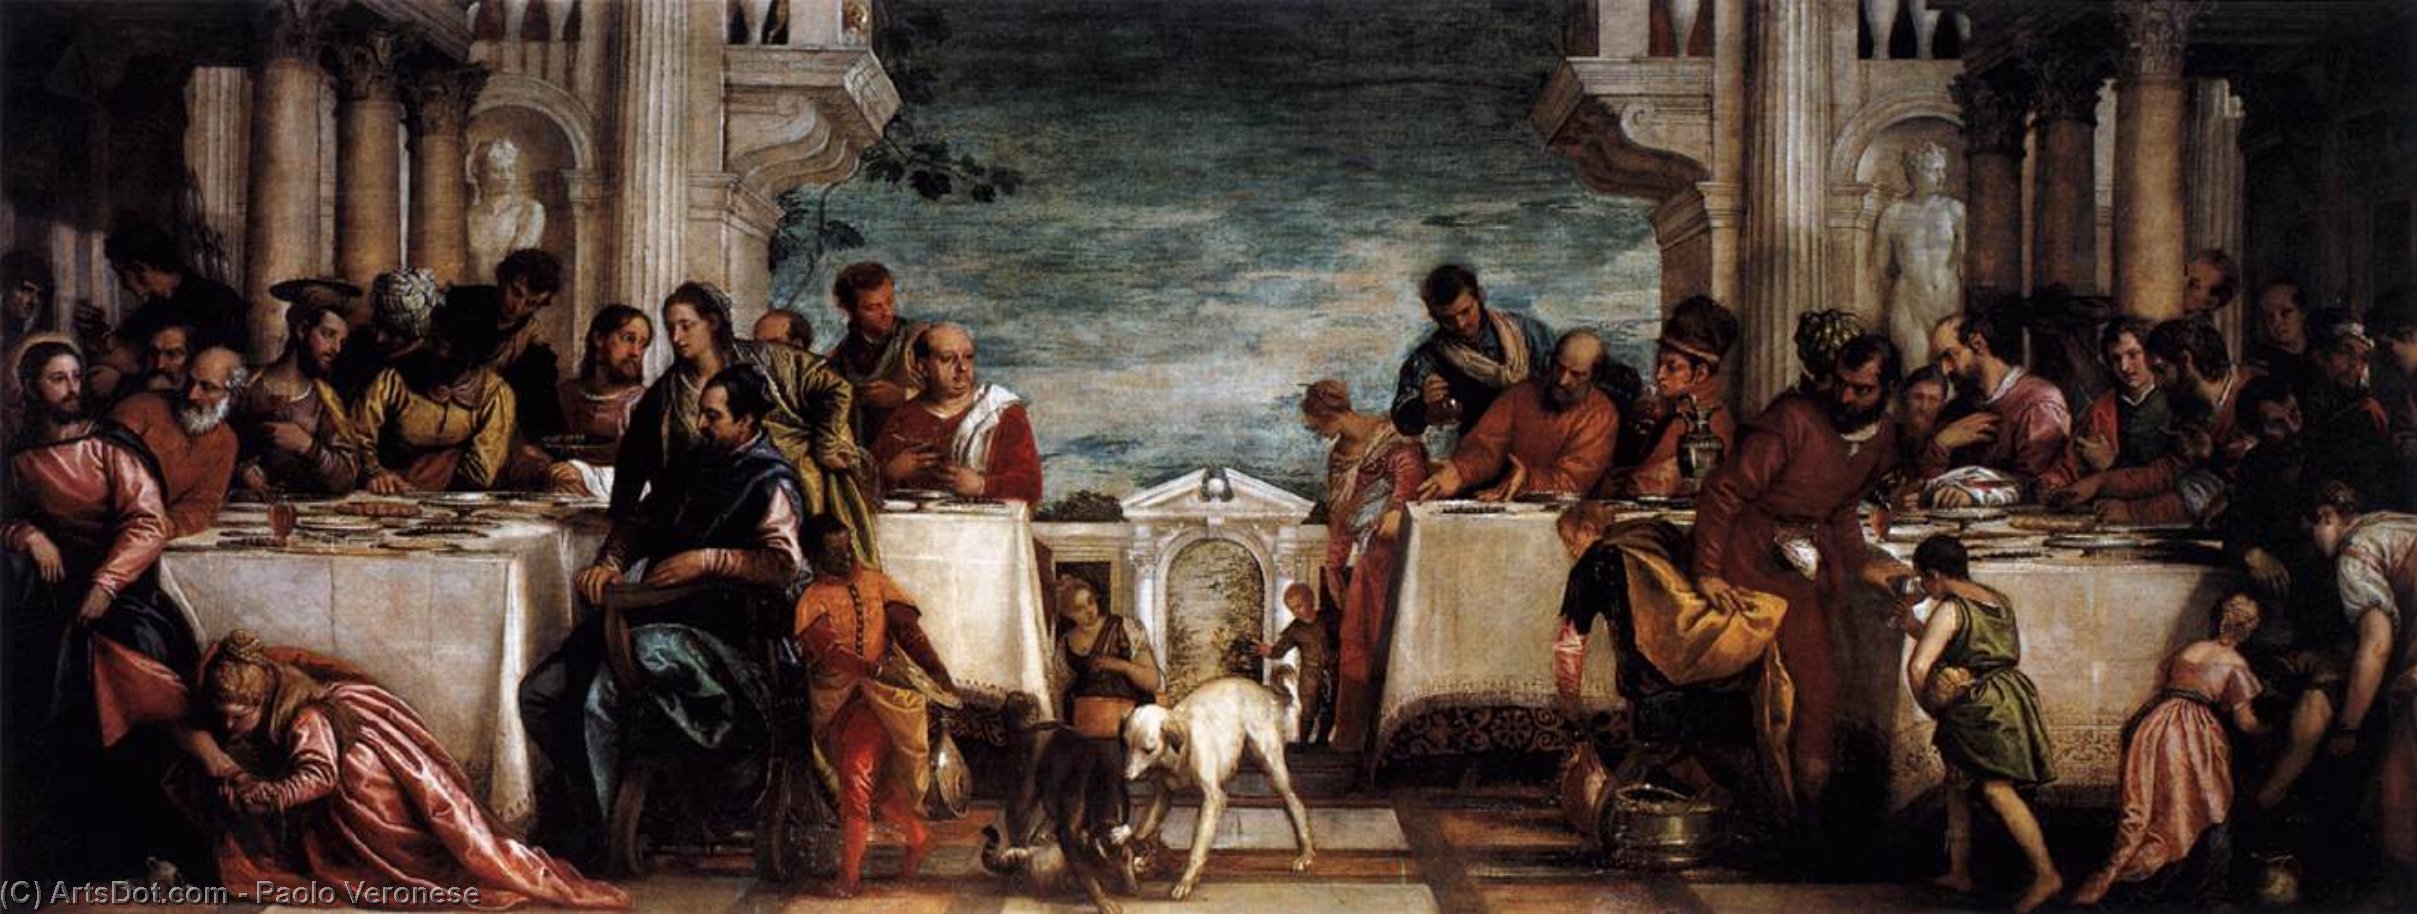 Wikioo.org - Bách khoa toàn thư về mỹ thuật - Vẽ tranh, Tác phẩm nghệ thuật Paolo Veronese - Feast at the House of Simon